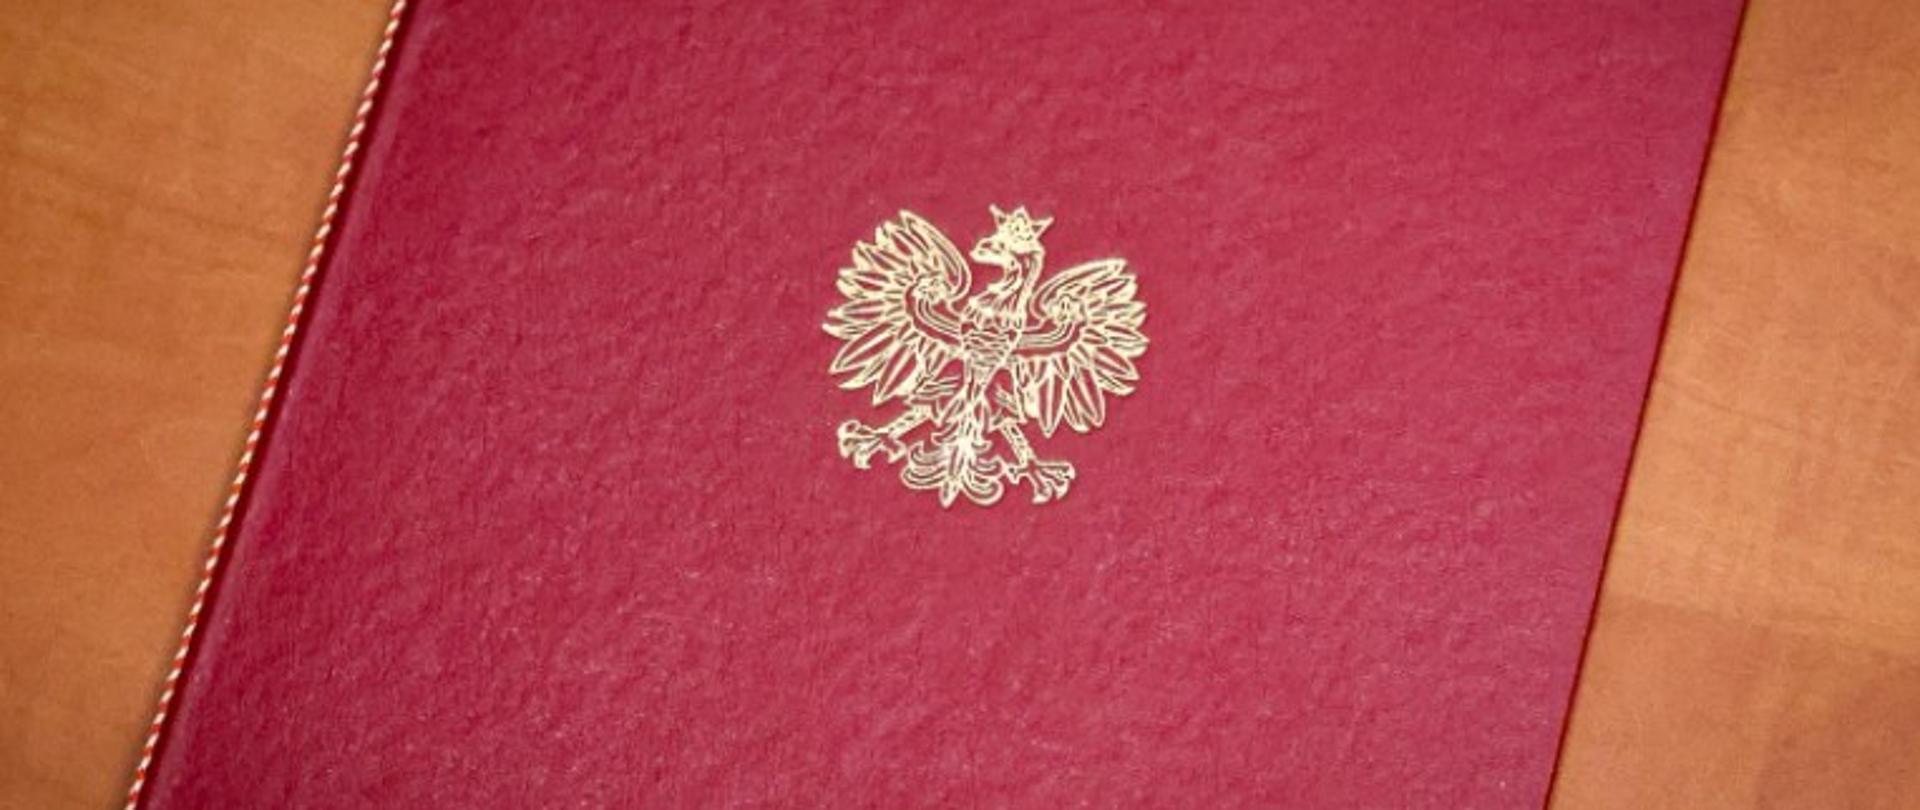 teczka na akta barwy ciemnoczerwonej z biegnącą wzdłuż grzbietu ozdobną nitką barwy biało-czerwonej ze wzorem ułożonym na skos oraz logotypem Orła Białego barwy złotej